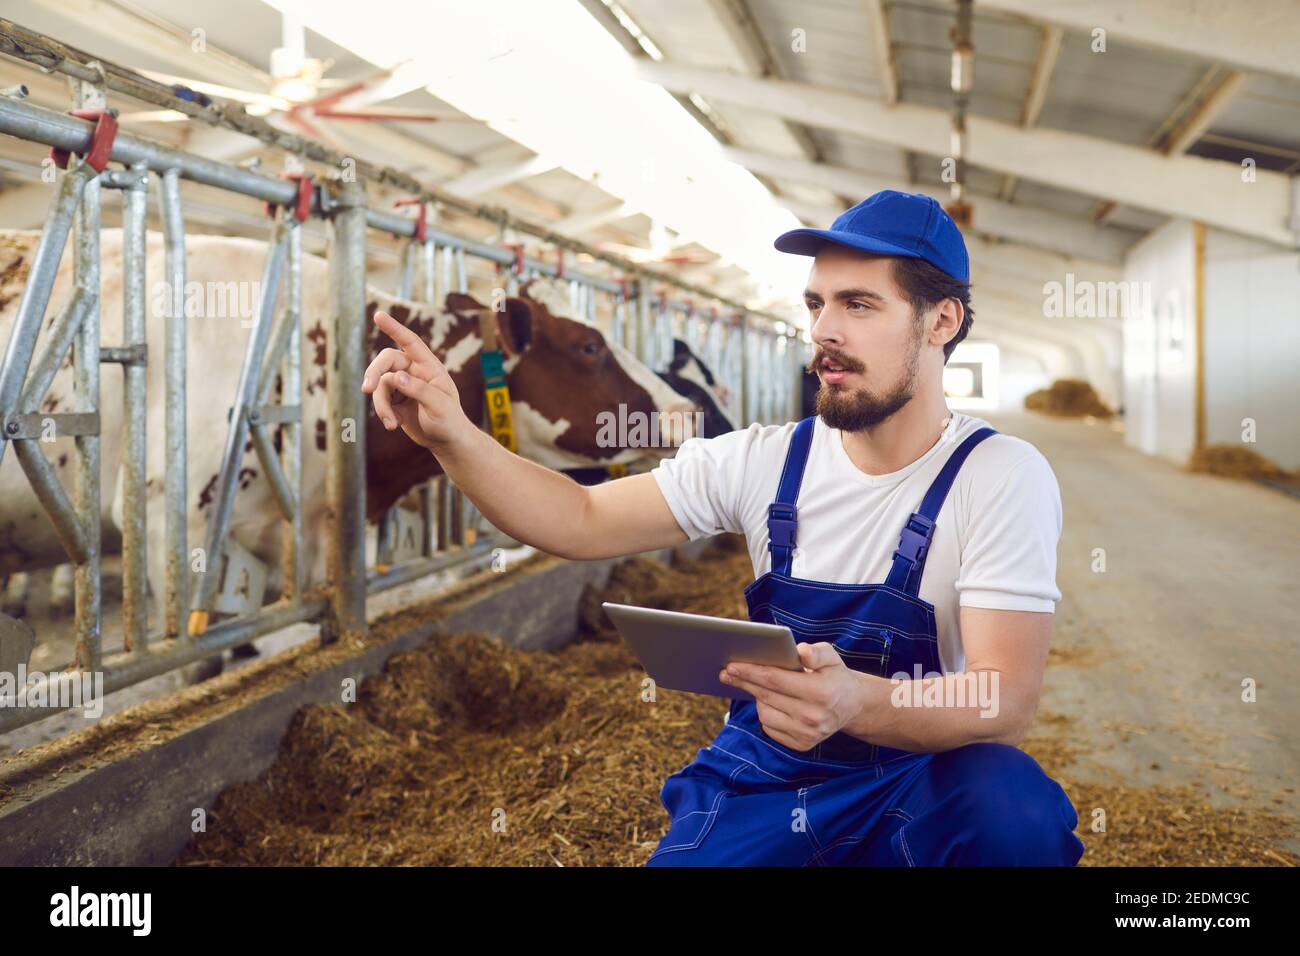 Il lavoratore agricolo maschile osserva le mucche nella capanna e registra i dati su di esse su un tablet digitale. Foto Stock